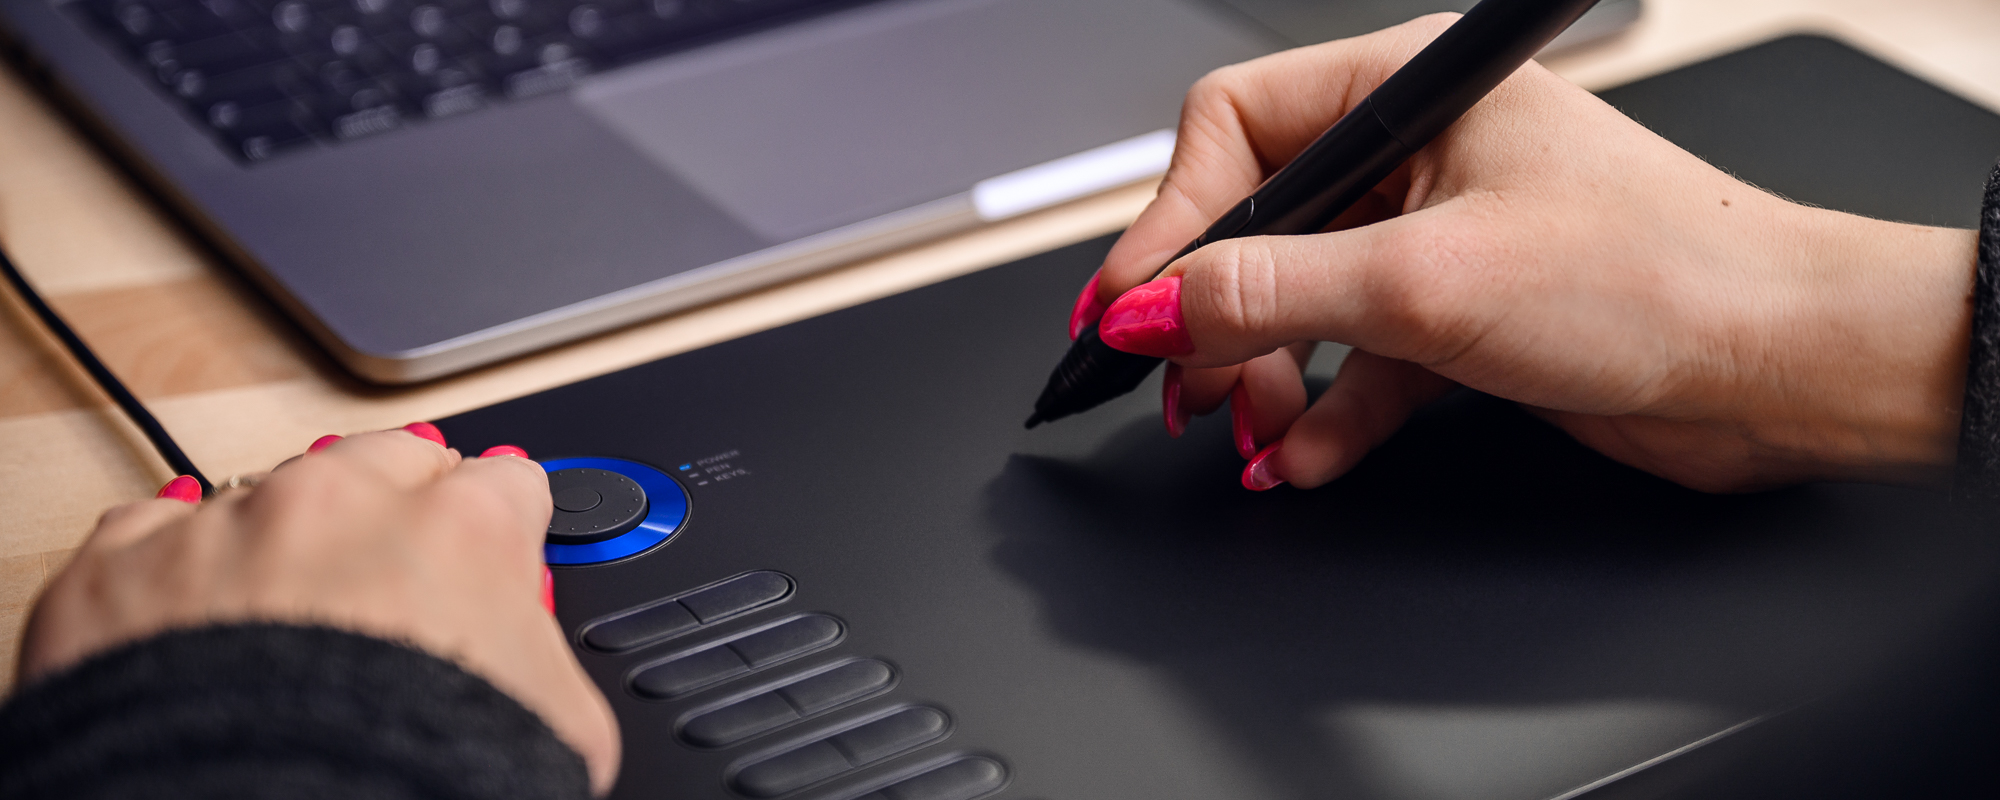 Zdjęcie - tablet graficzny Veikk A15 Pro na jasnobrązowym biurku, lewa dłoń kobiety naciska klawisz funkcyjny, prawa obsługuje piórko pasywne Veikk